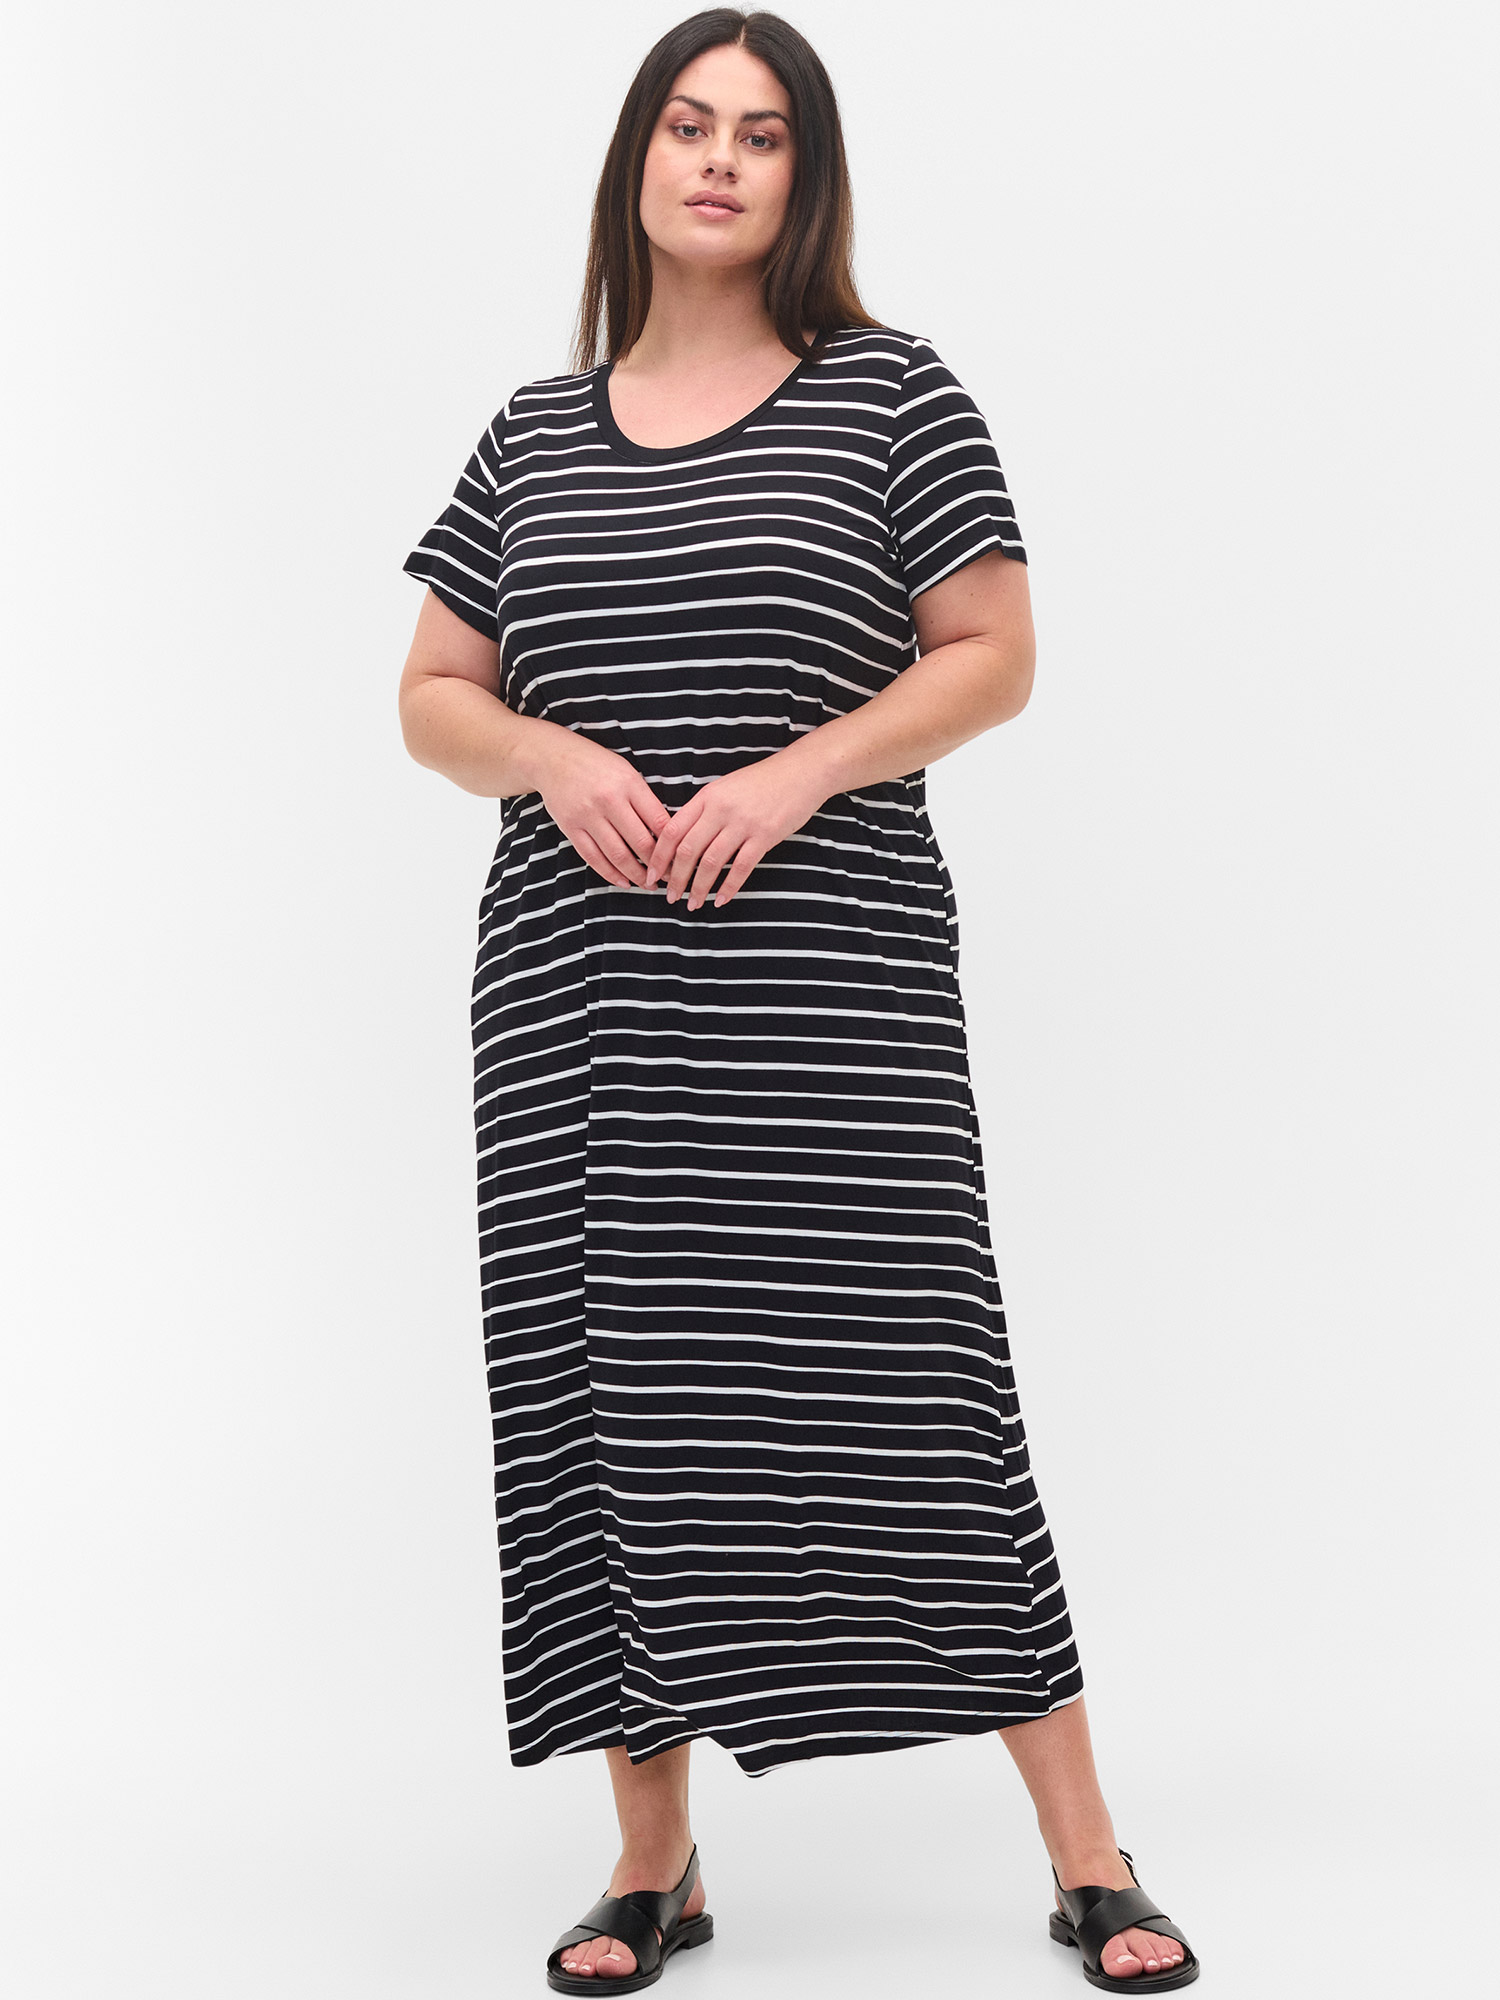 Vfreja - Lang svart kjole i viskosejersey med hvite striper fra Zizzi